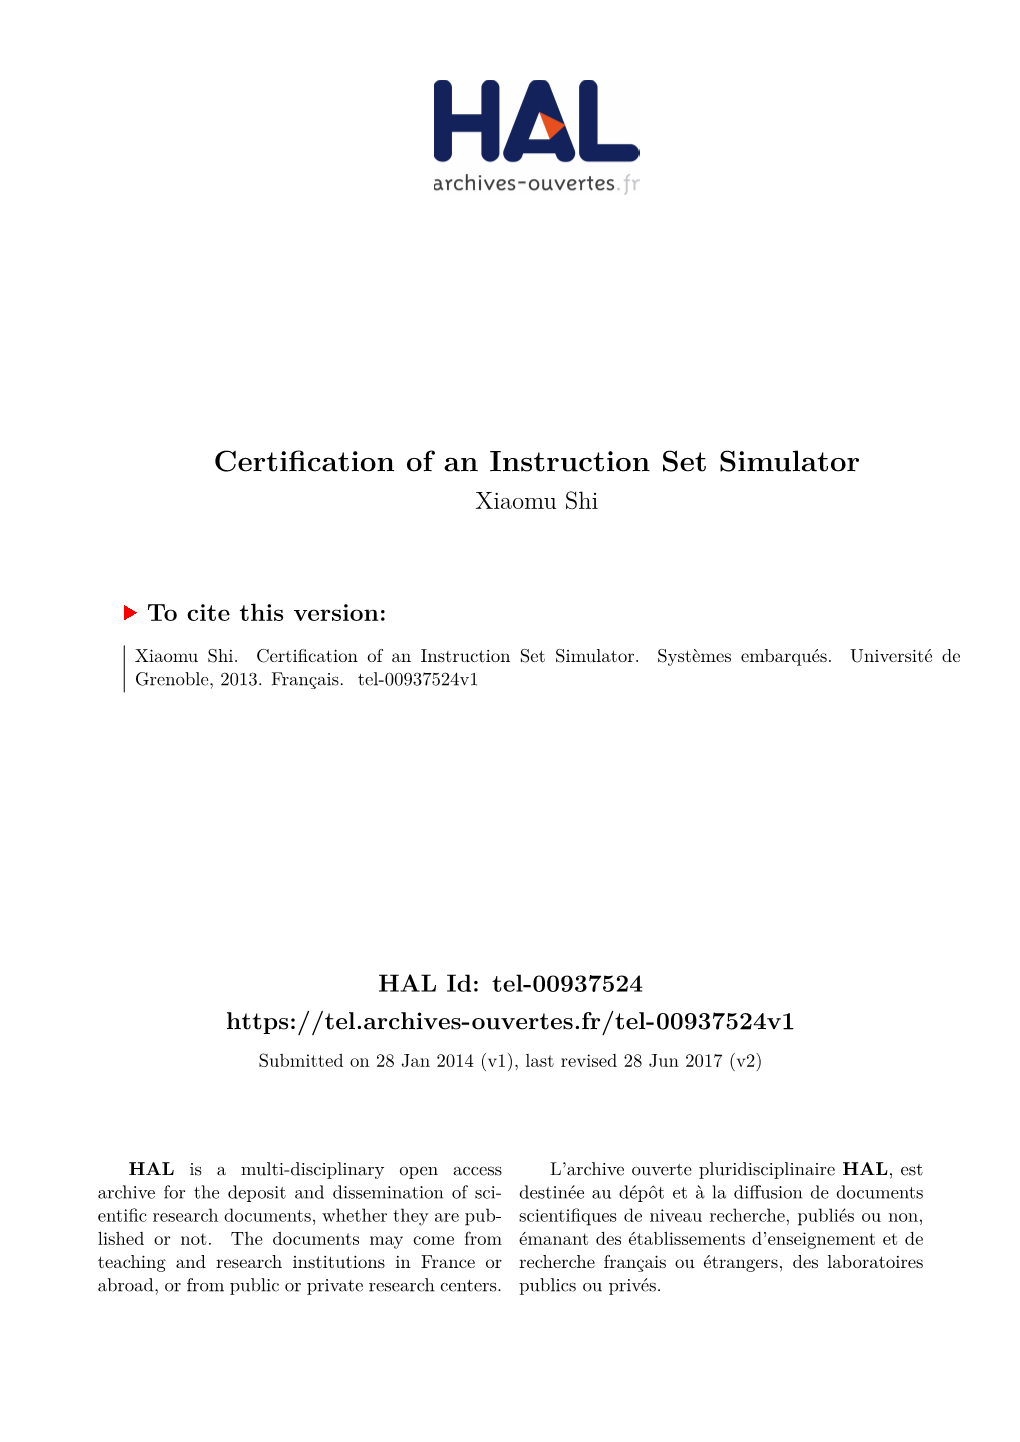 Certification of an Instruction Set Simulator Xiaomu Shi